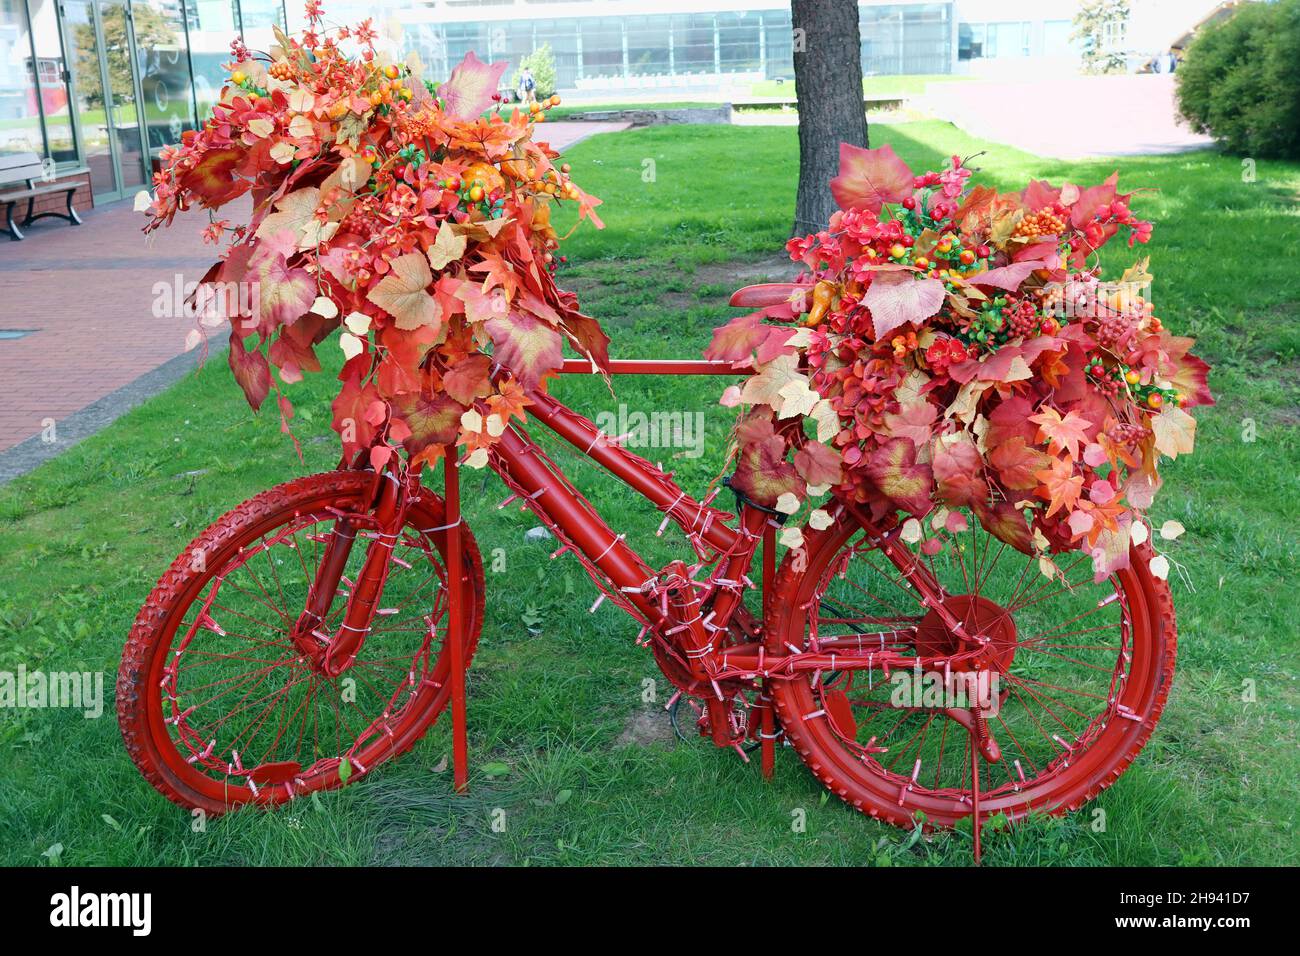 La vieja bicicleta está pintada de rojo. Las flores y las hojas de otoño decoran las ruedas Foto de stock